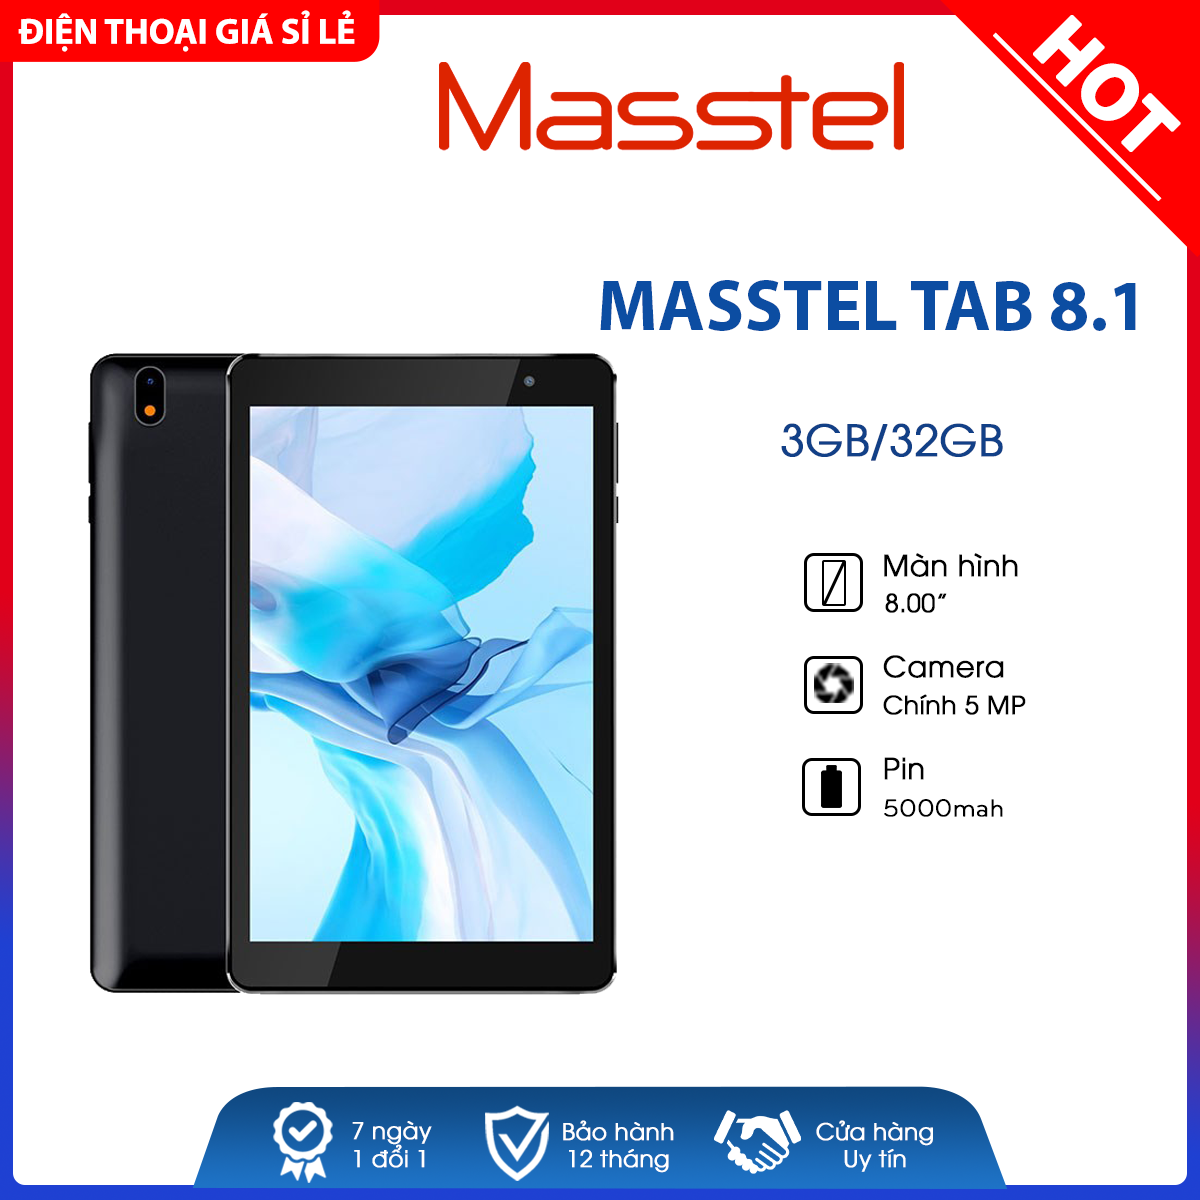 Máy tính bảng Masstel Tab 8.1 4G (3GB/32GB) – Mới 100%, Nguyên Seal – Bảo hành chính hãng 12 tháng